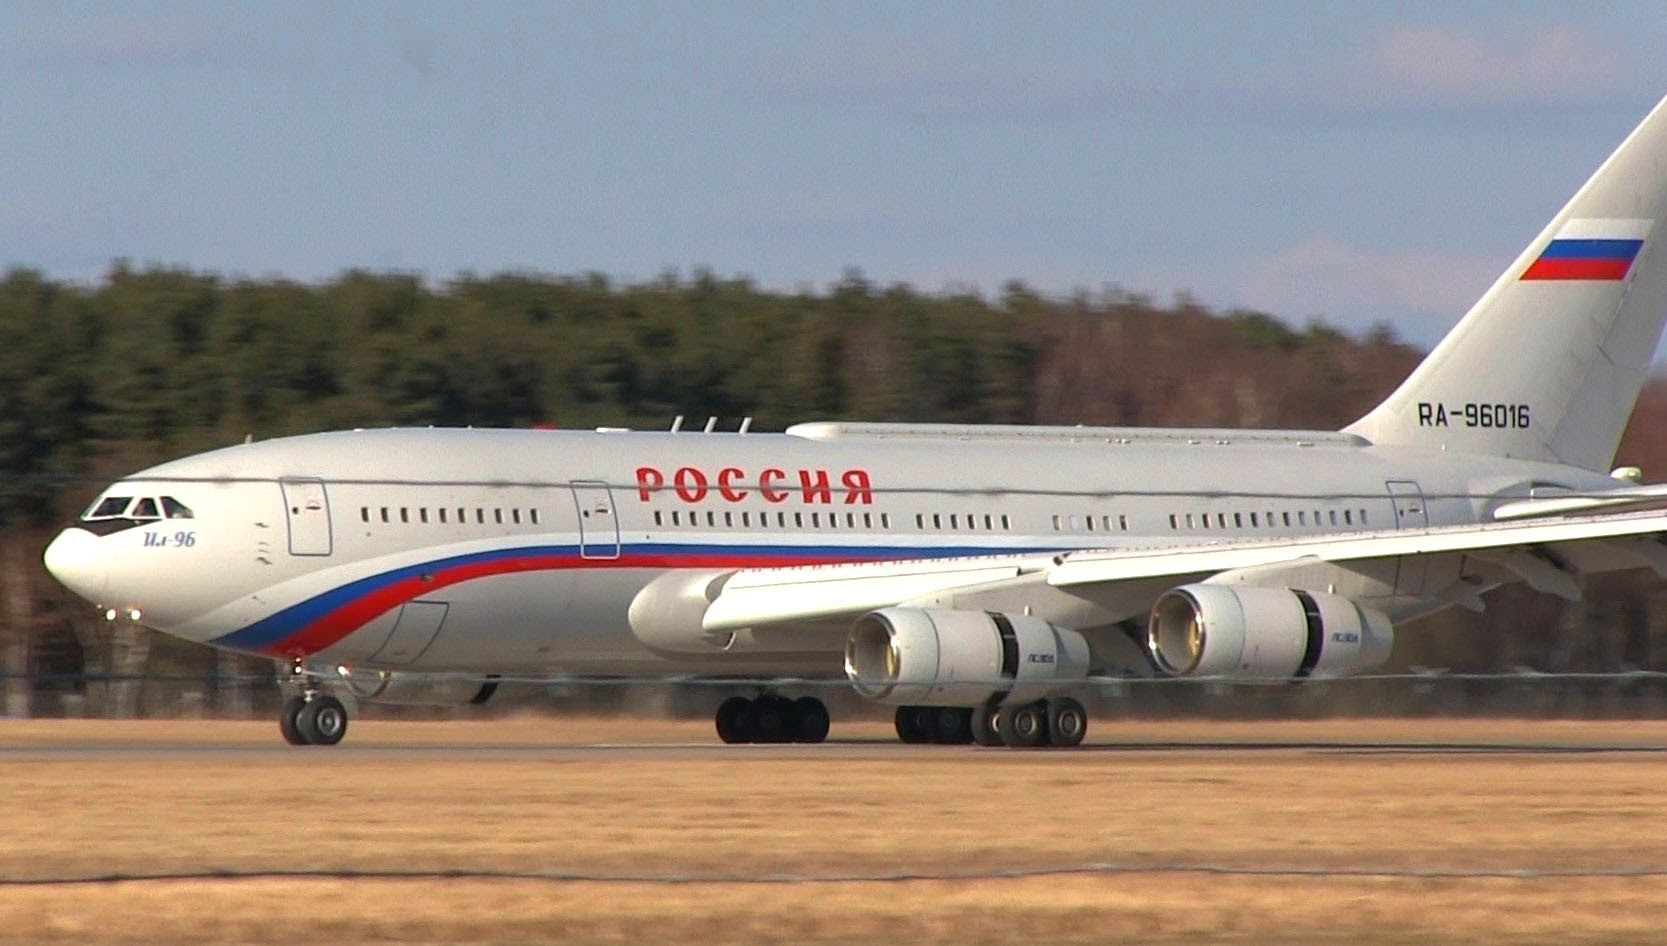 Πτήση-θρίλερ για το αεροσκάφος του Β.Πούτιν: Πληροφορίες για «πιθανή επίθεση» οδήγησαν στην αλλαγή του δρομολογίου